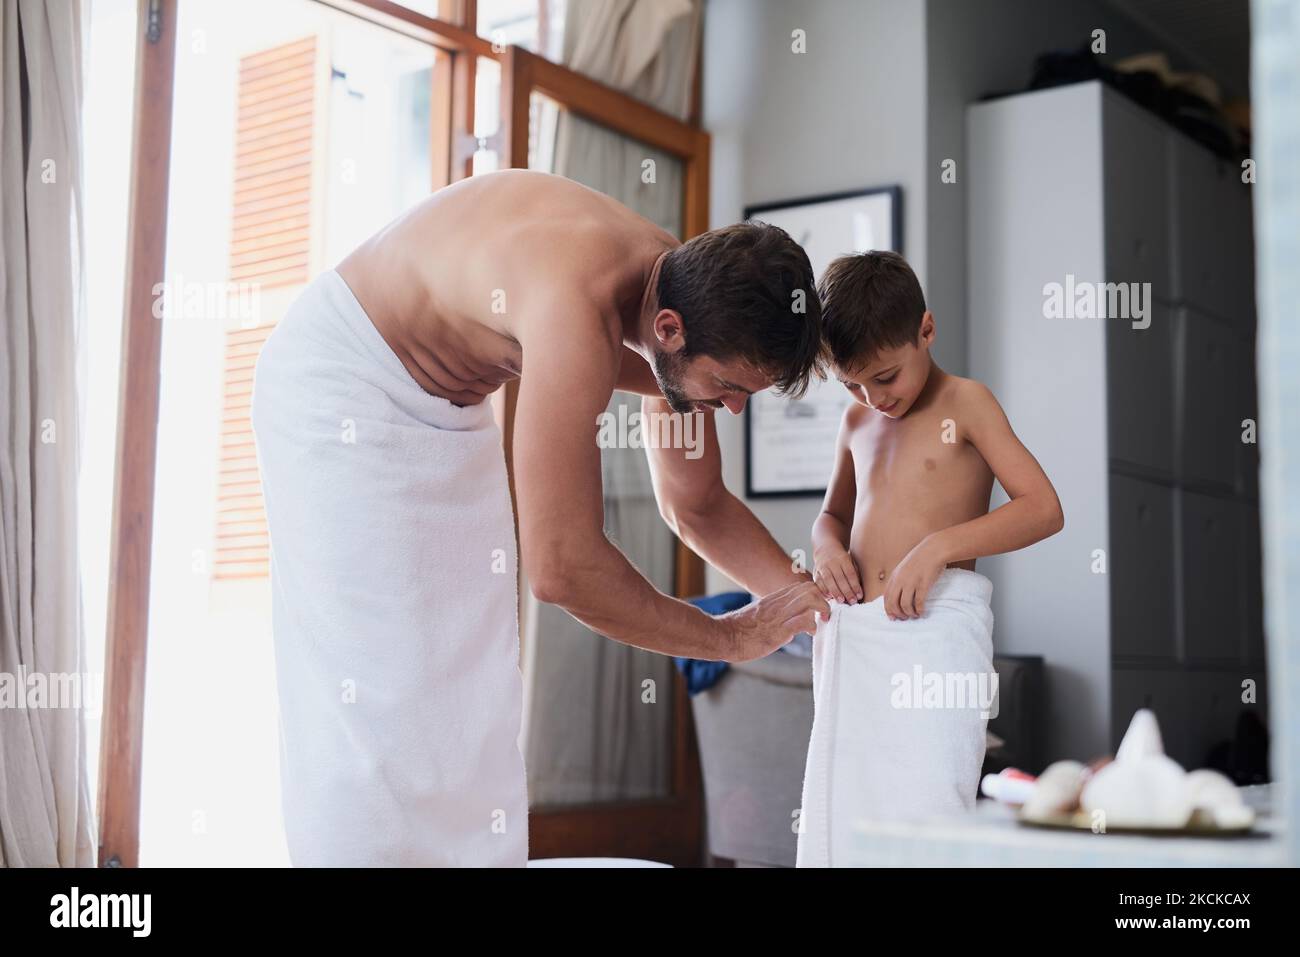 Lassen Sie mich Ihnen dabei helfen: Ein hübscher junger Mann und sein Sohn, nach einer Dusche in Handtücher eingewickelt. Stockfoto